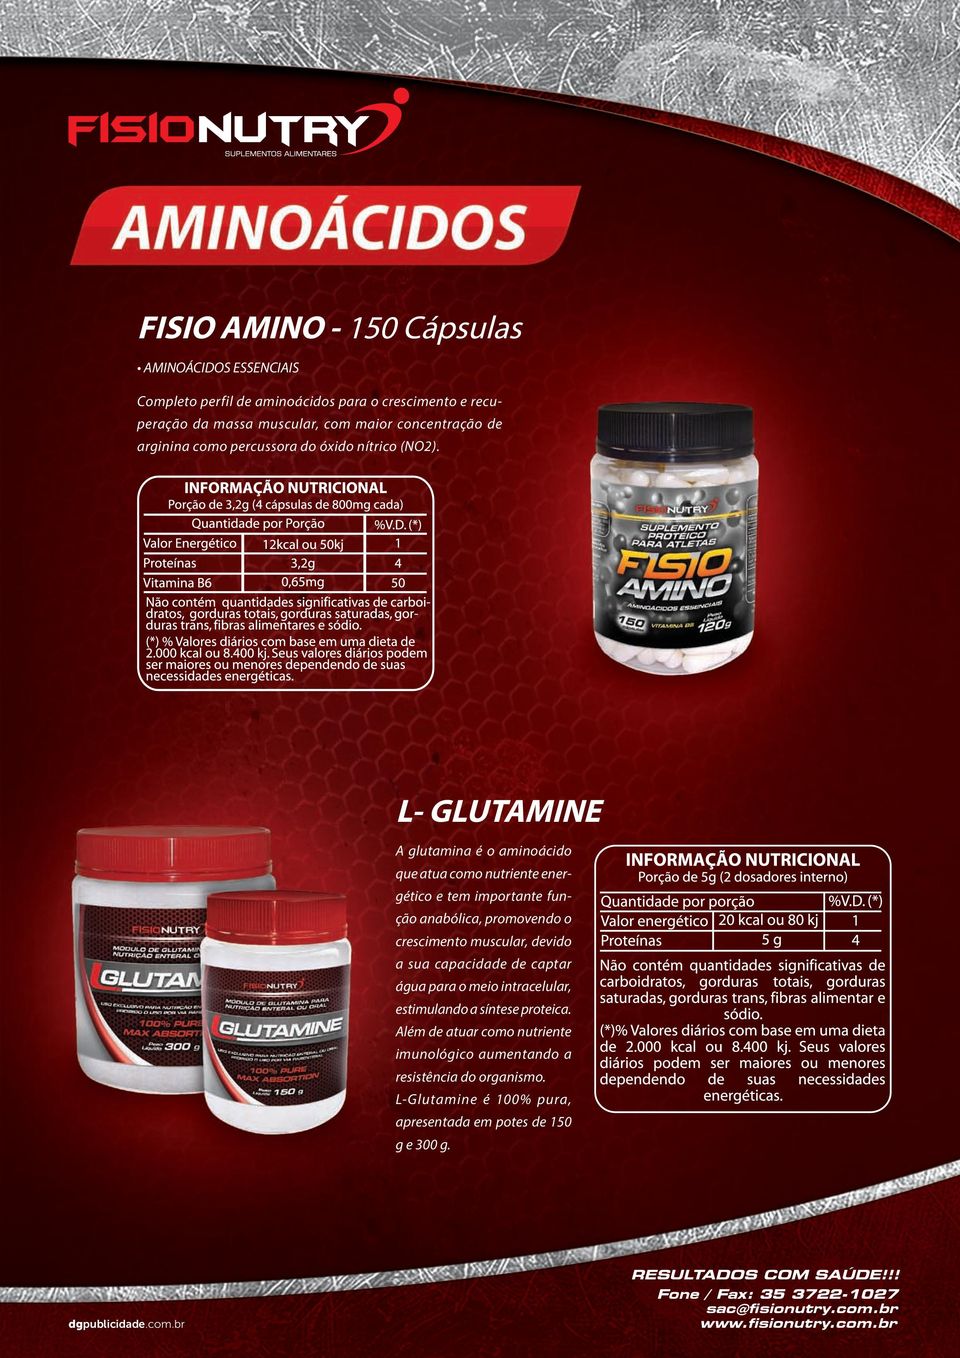 L- GLUTAMINE A glutamina é o aminoácido que atua como nutriente energético e tem importante função anabólica, promovendo o crescimento muscular,